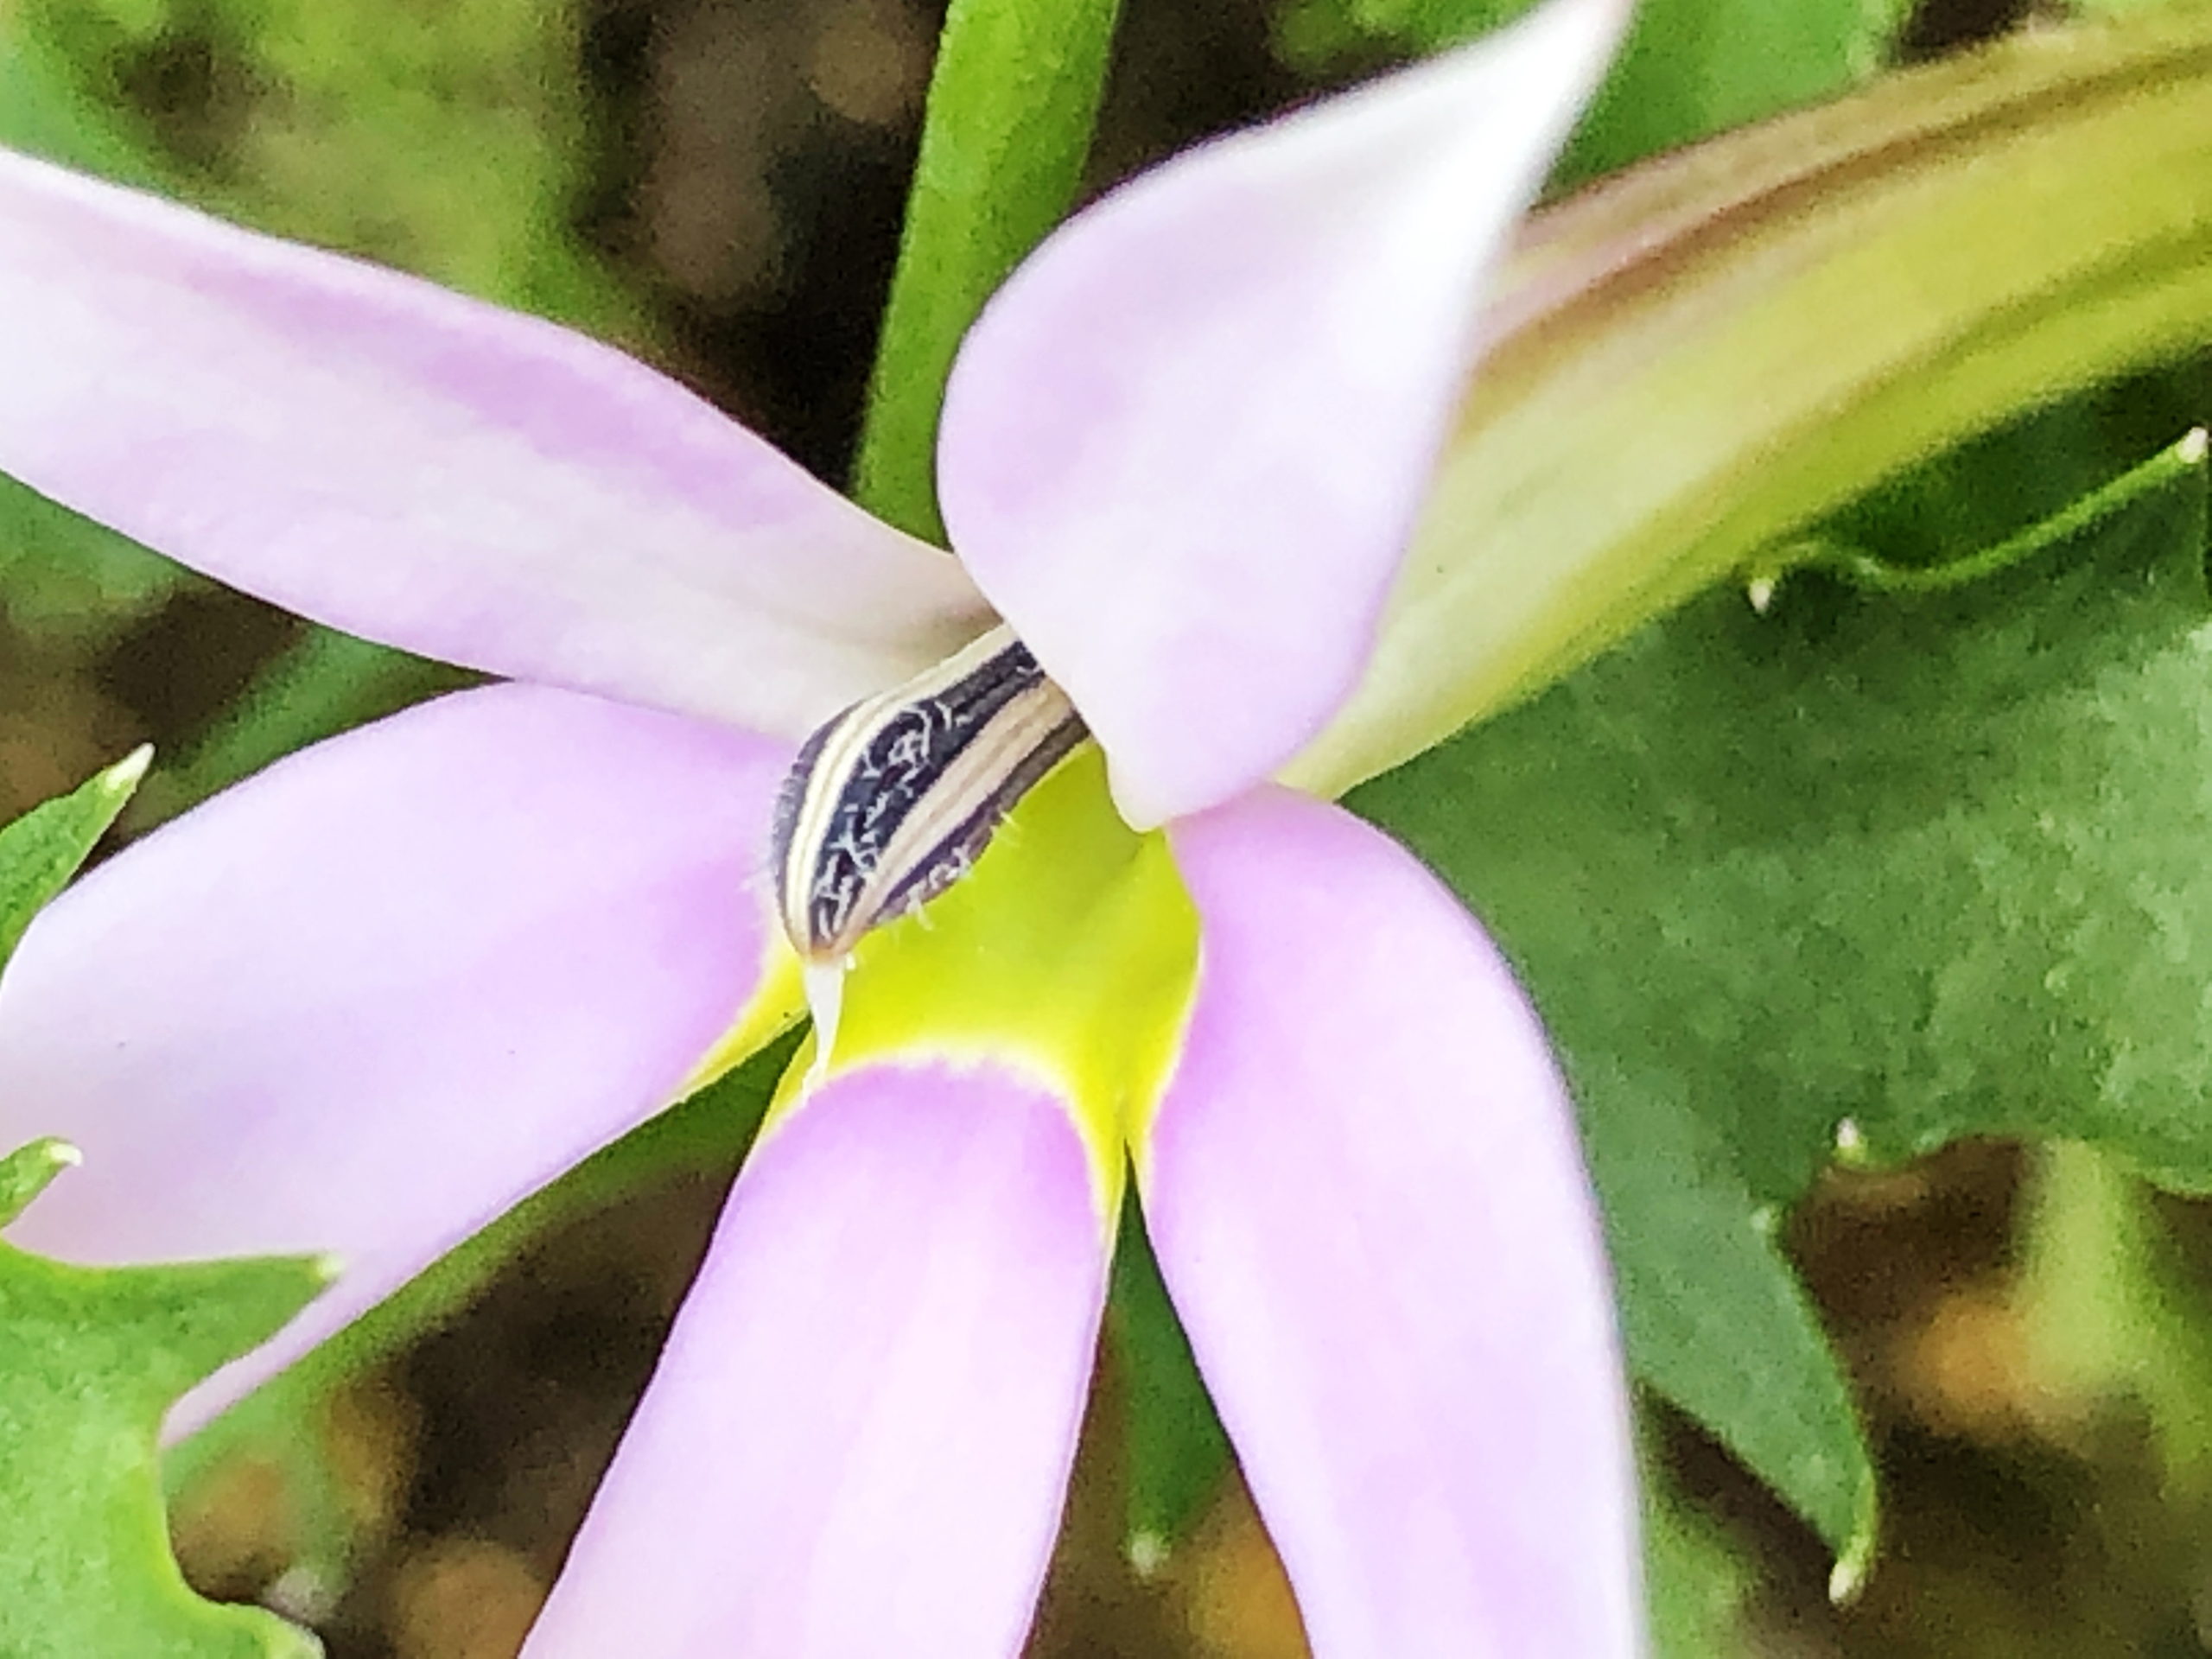 イソトマ アクシラリス キキョウ科 イソトマ属 漏斗型の花 白 ピンク 紫 青色の花 雄性先熟 蒴果 有毒